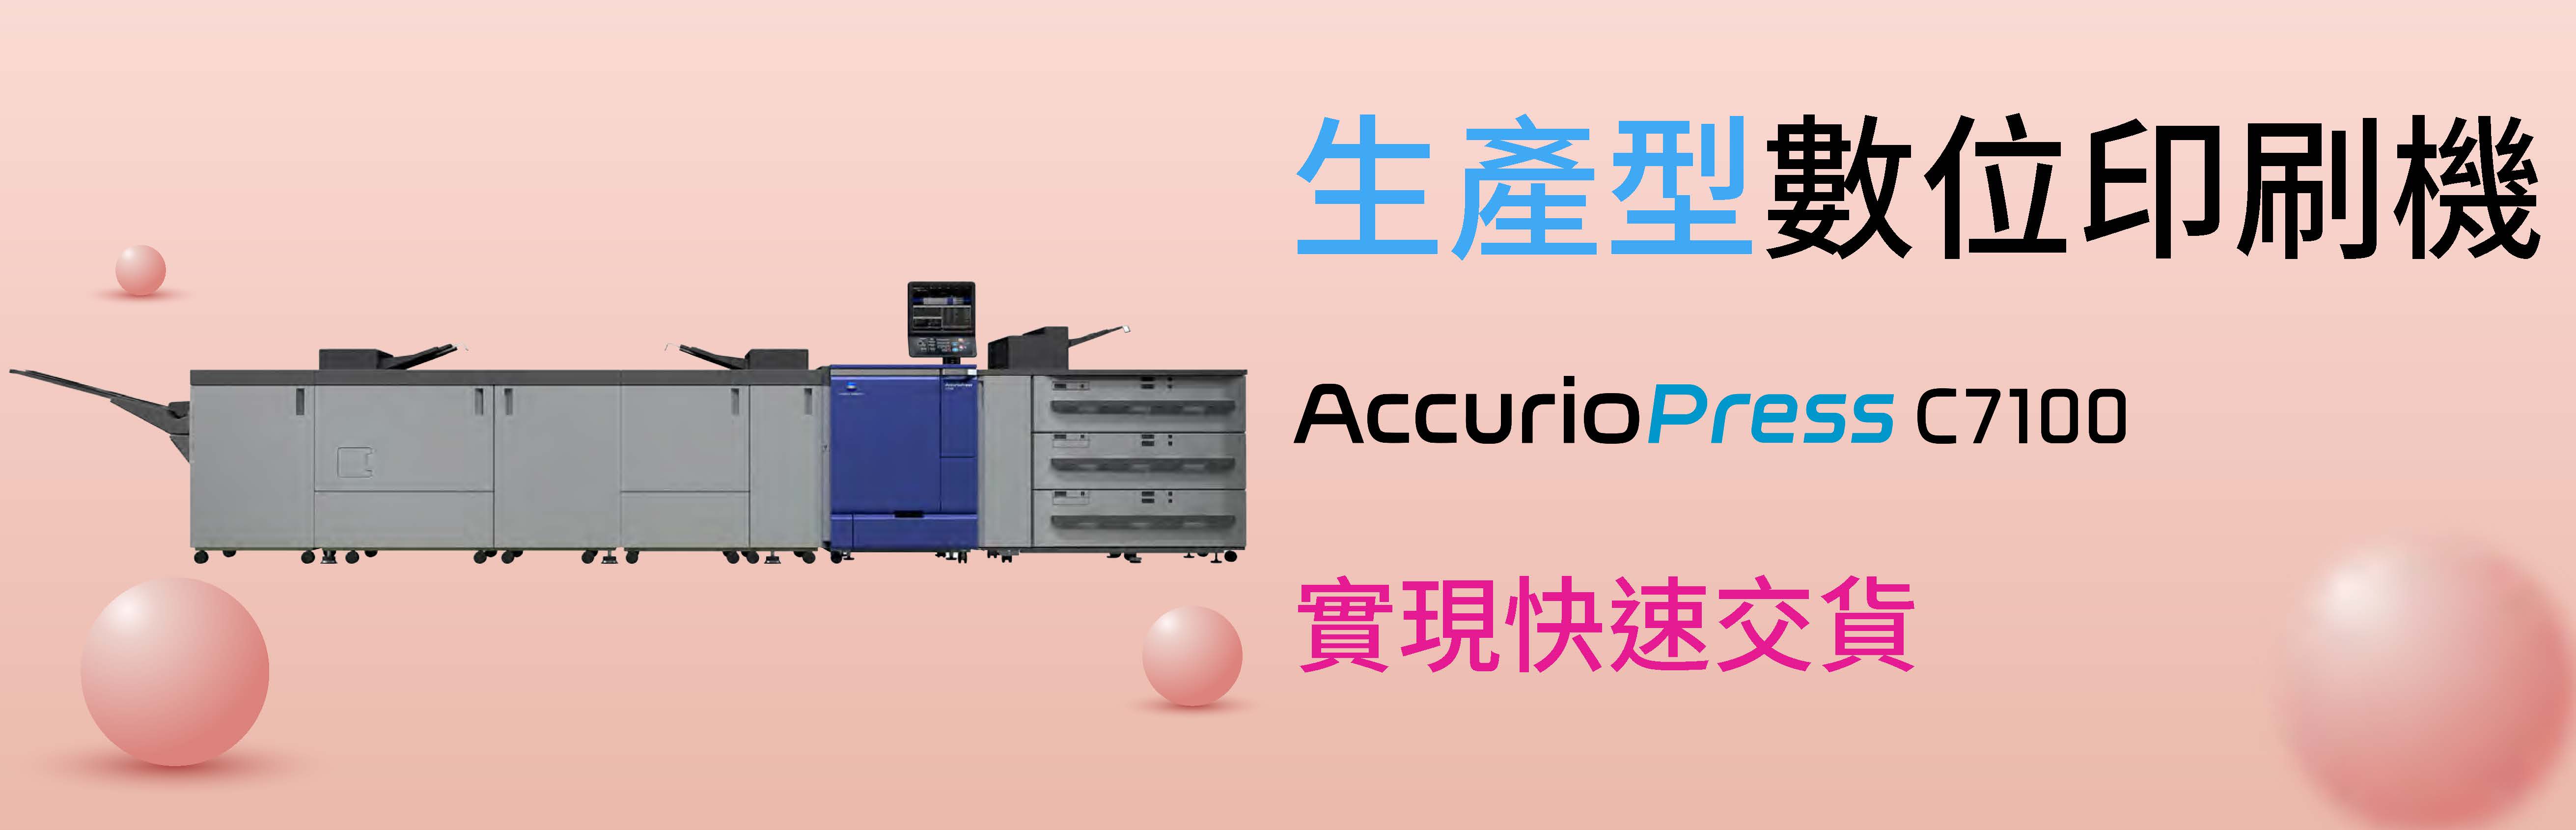 生產型數位印刷機推薦C7100｜自動化印刷，實現高效生產力